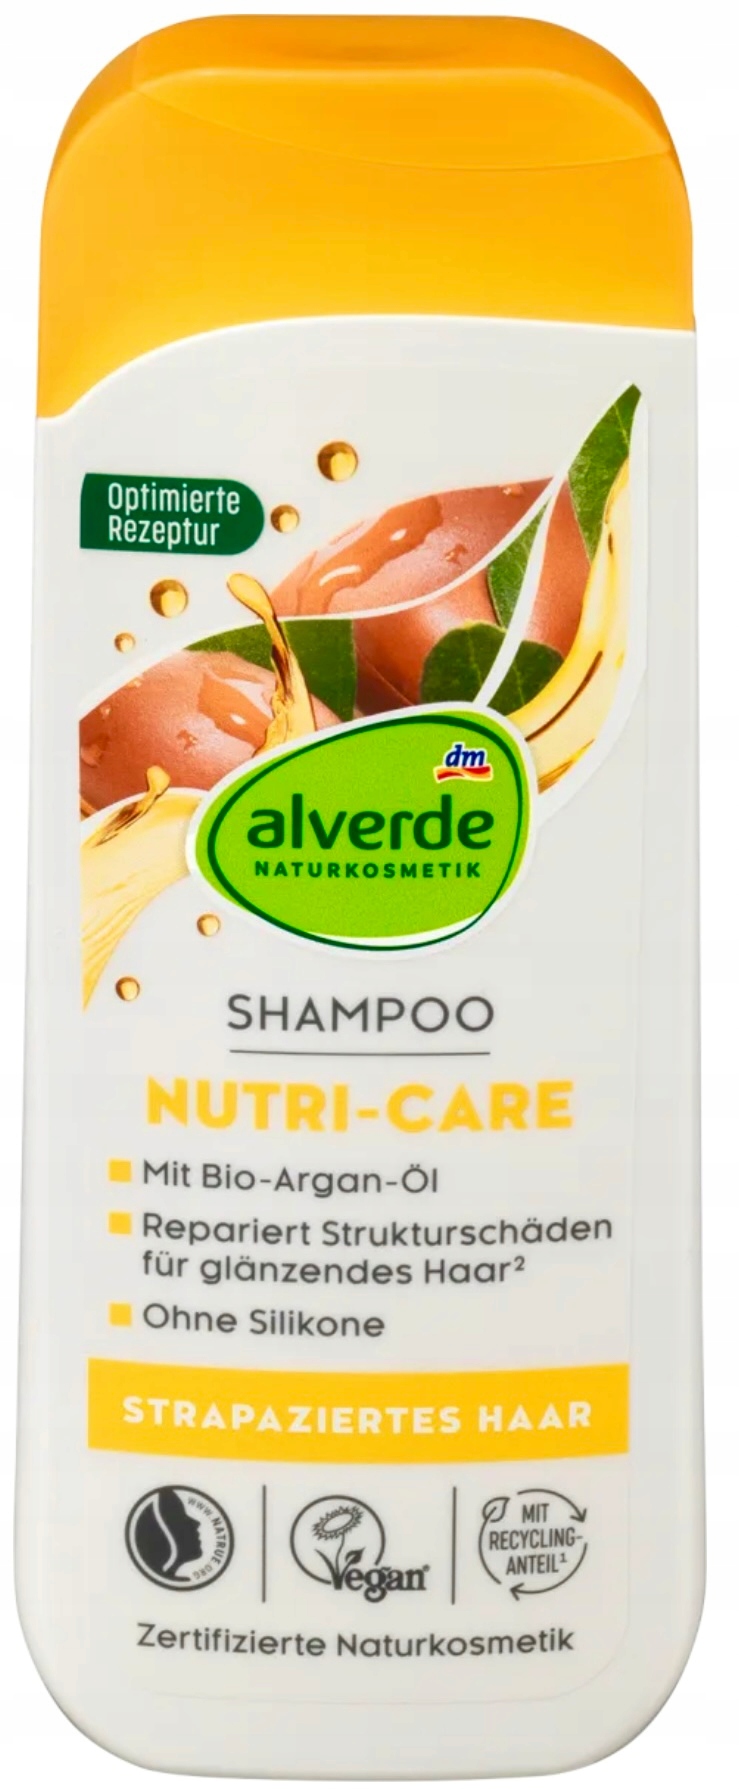 alverde olejek migdałowy i arganowy do włosów